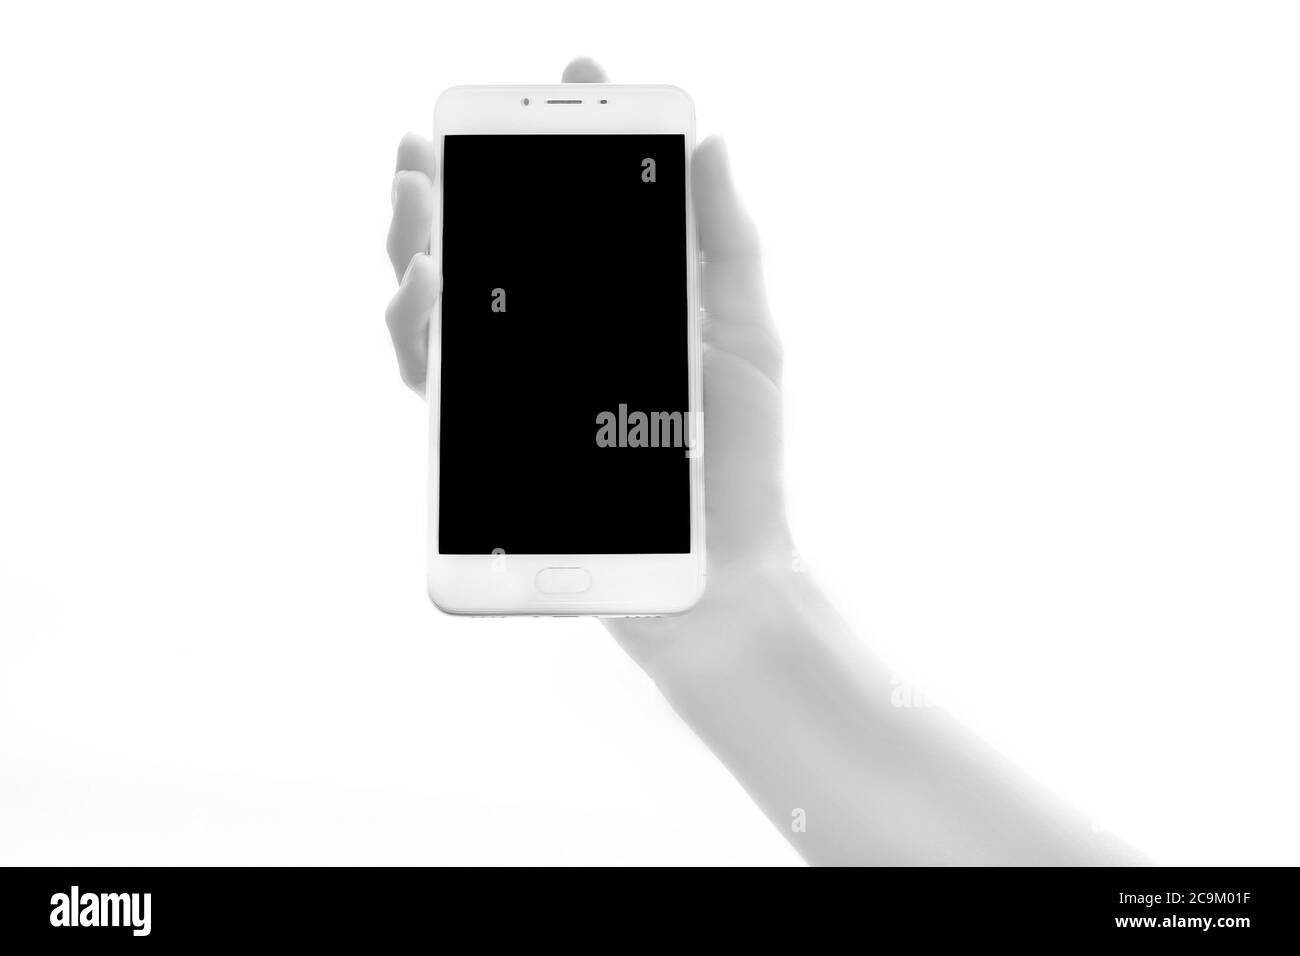 Les droits de l'bionic hands holding électronique sur fond blanc. Concept futuriste de l'intelligence artificielle Banque D'Images